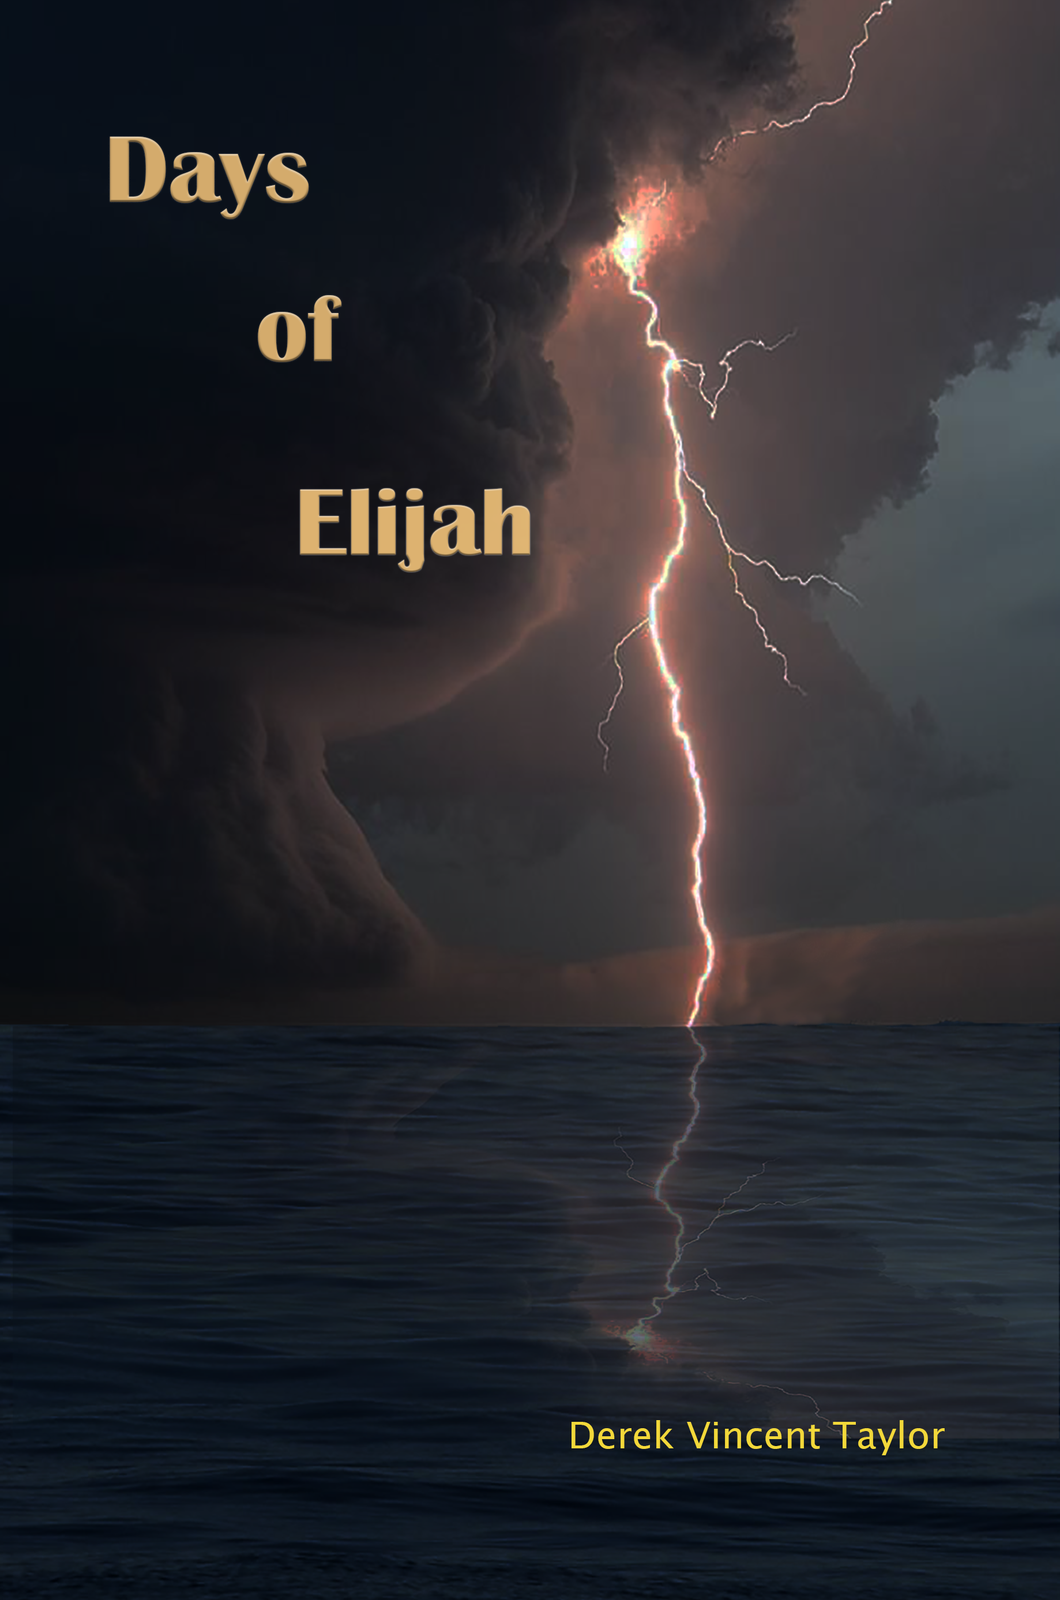 Days of Elijah Book (local book reading copy).